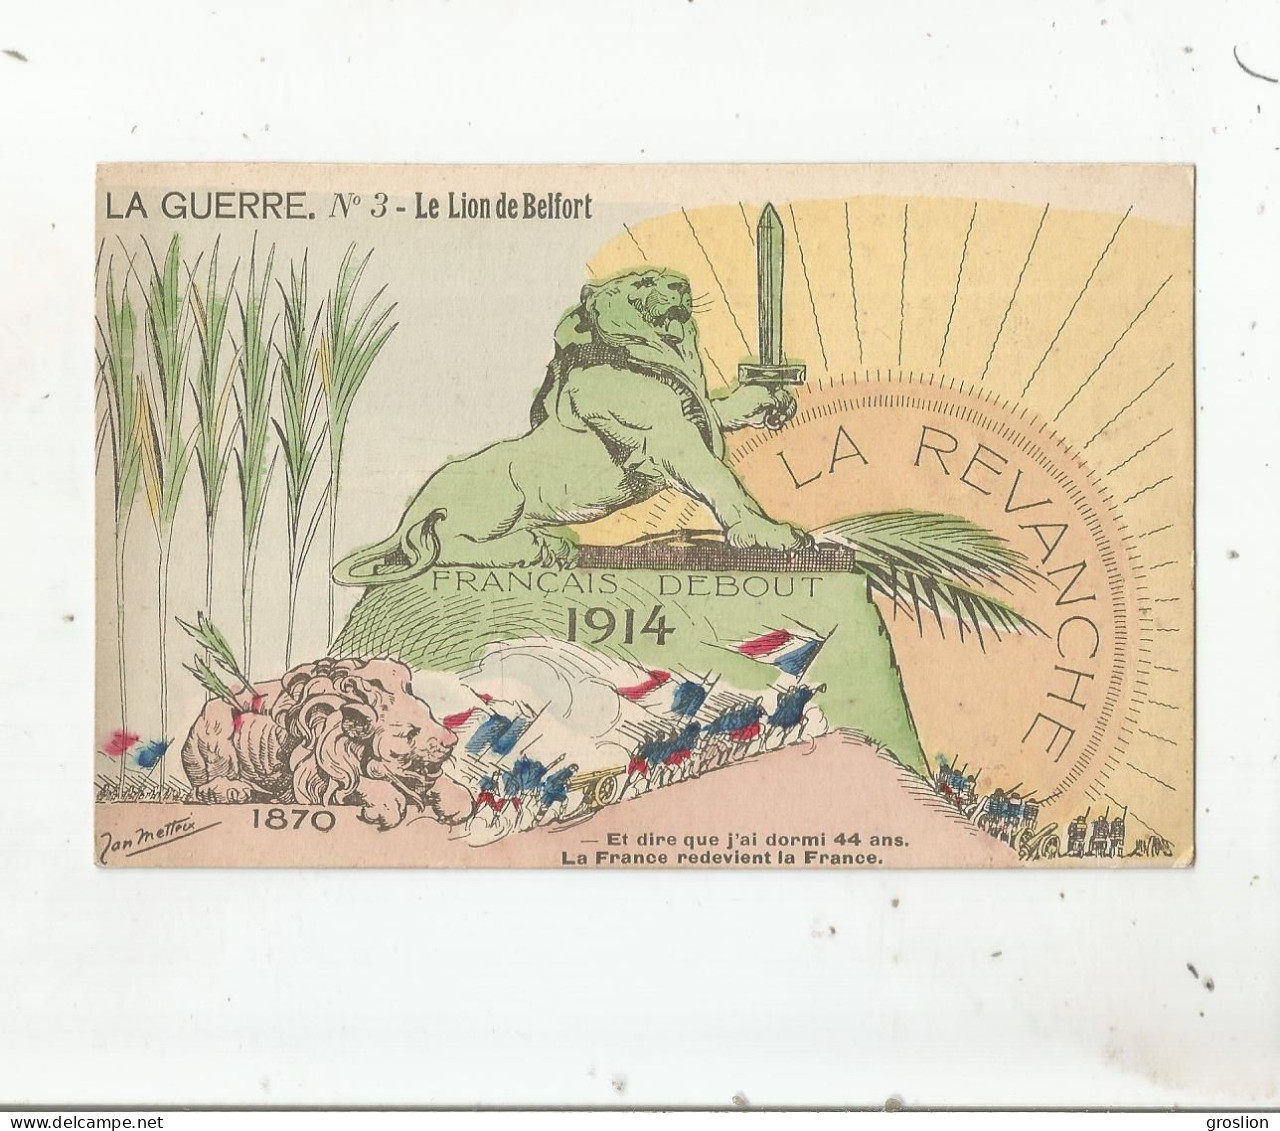 LA GUERRE 3 LE LION DE BELFORT 1870 1914 FRANCAIS DEBOUT ET DIRE QUE J'AI DORMI 44 ANS LA FRANCE REDEVIENT LA FRANCE - Satirical